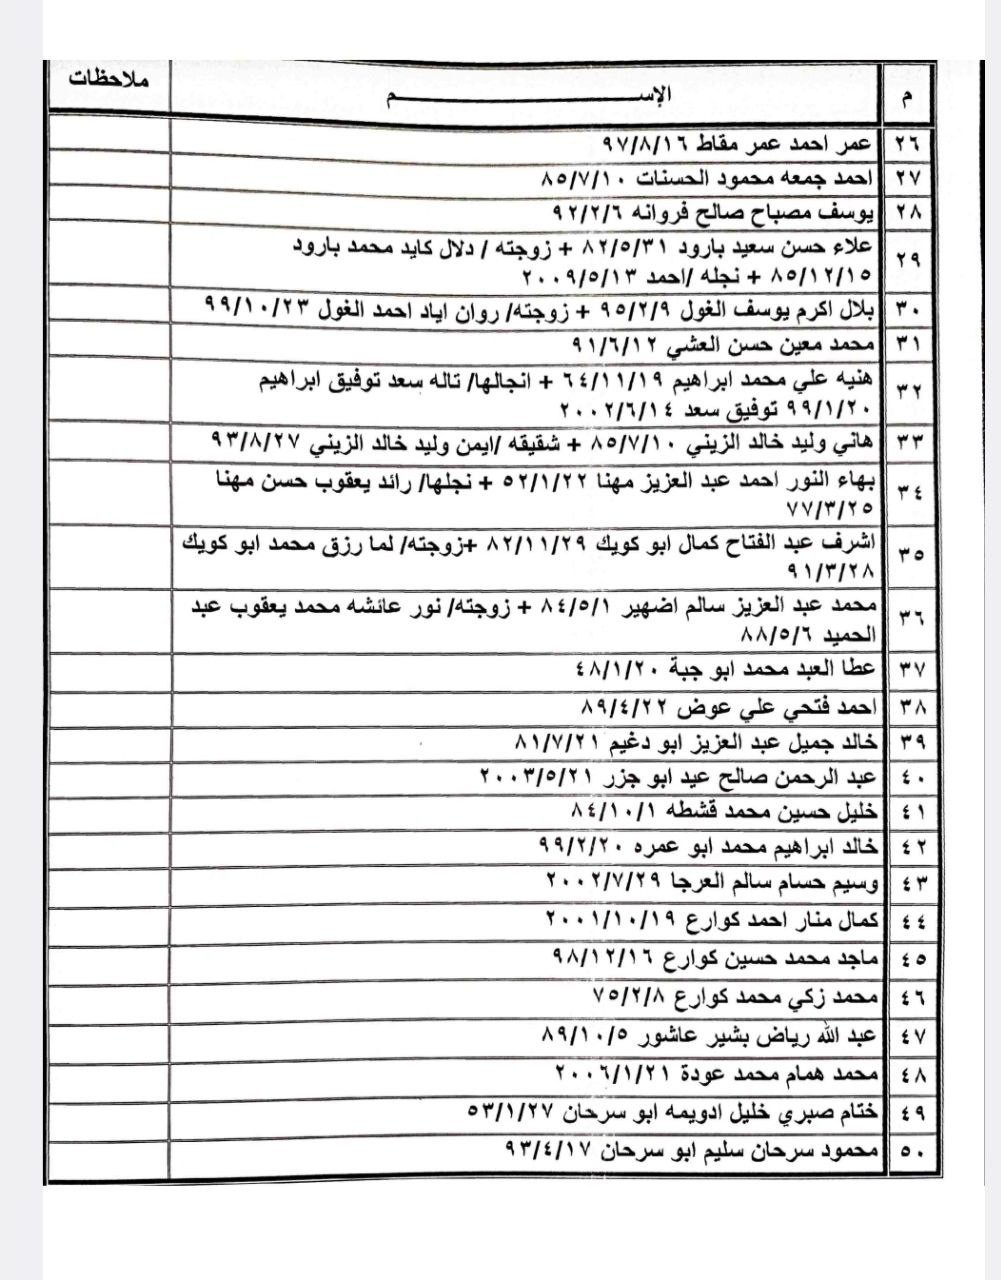 بالأسماء: كشف تنسيقات مصرية للسفر عبر معبر رفح يوم الثلاثاء 16 مايو 2023